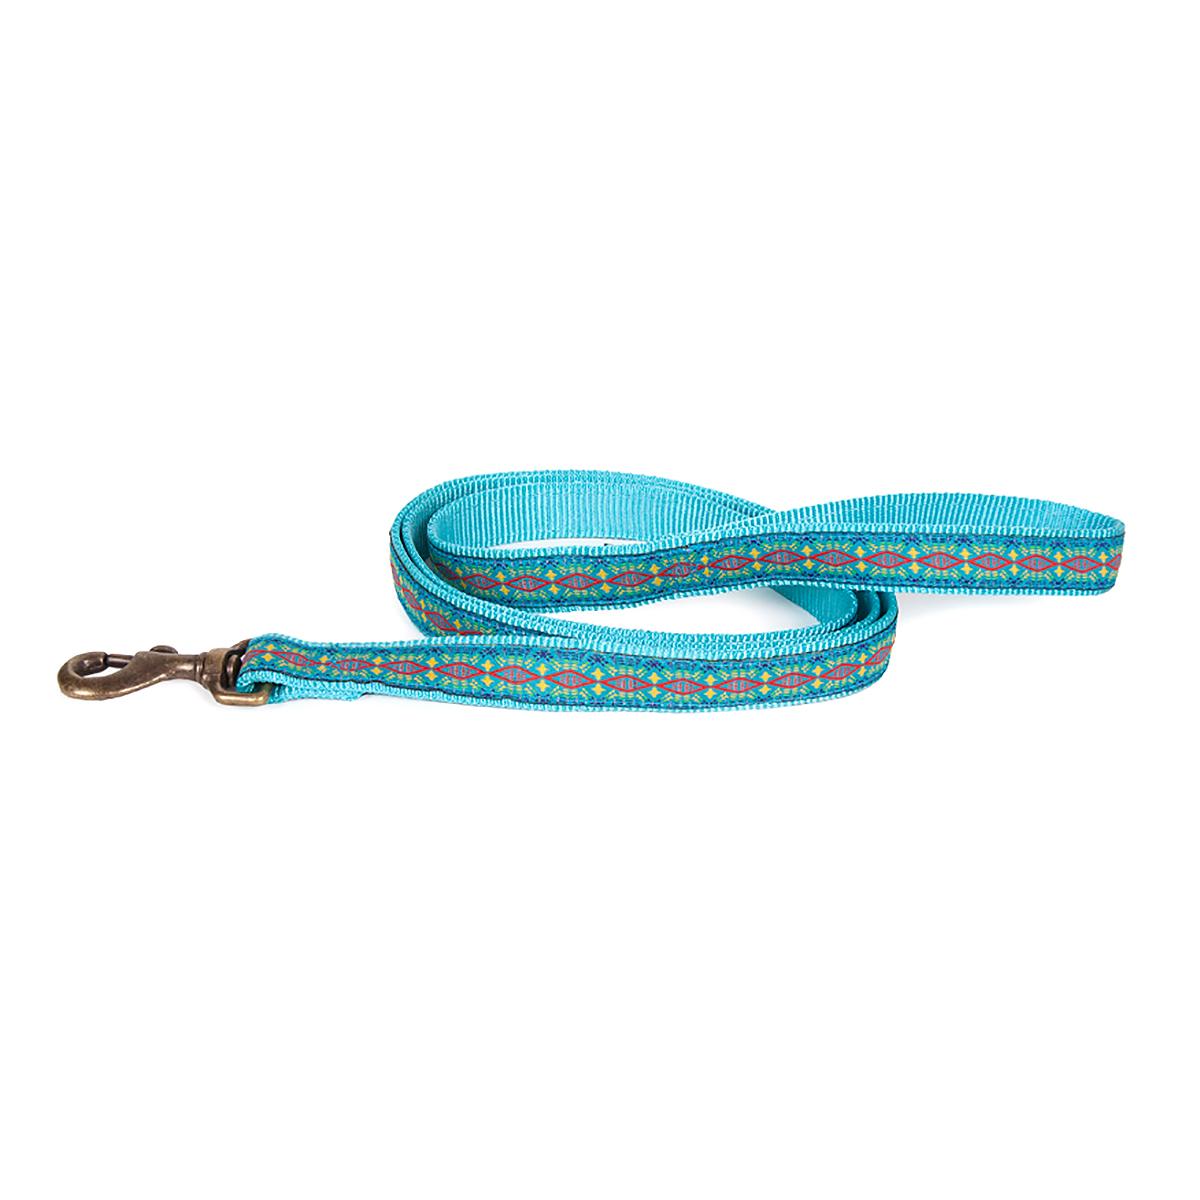 Pendleton Pet Diamond River Dog Leash - Turquoise